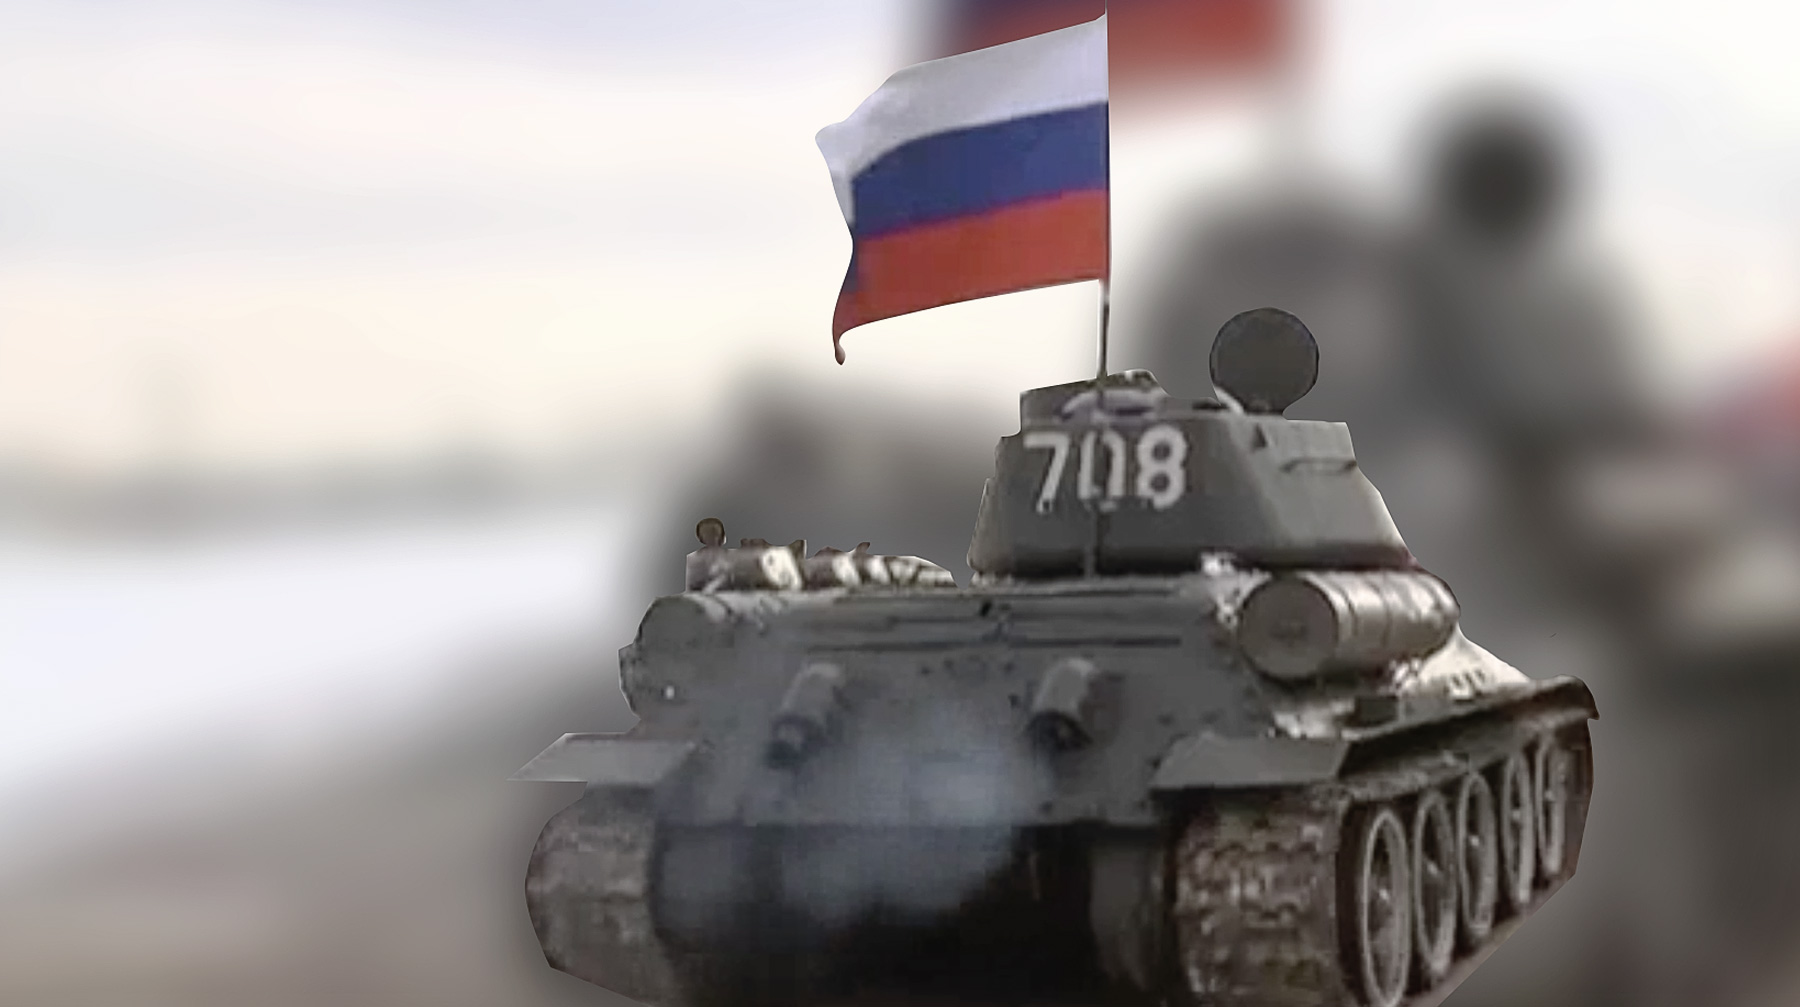 Сводный танковый батальон будет дислоцироваться в Наро-Фоминске, сообщил командир дивизии полковник Владимир Завадский Коллаж: © Daily Storm